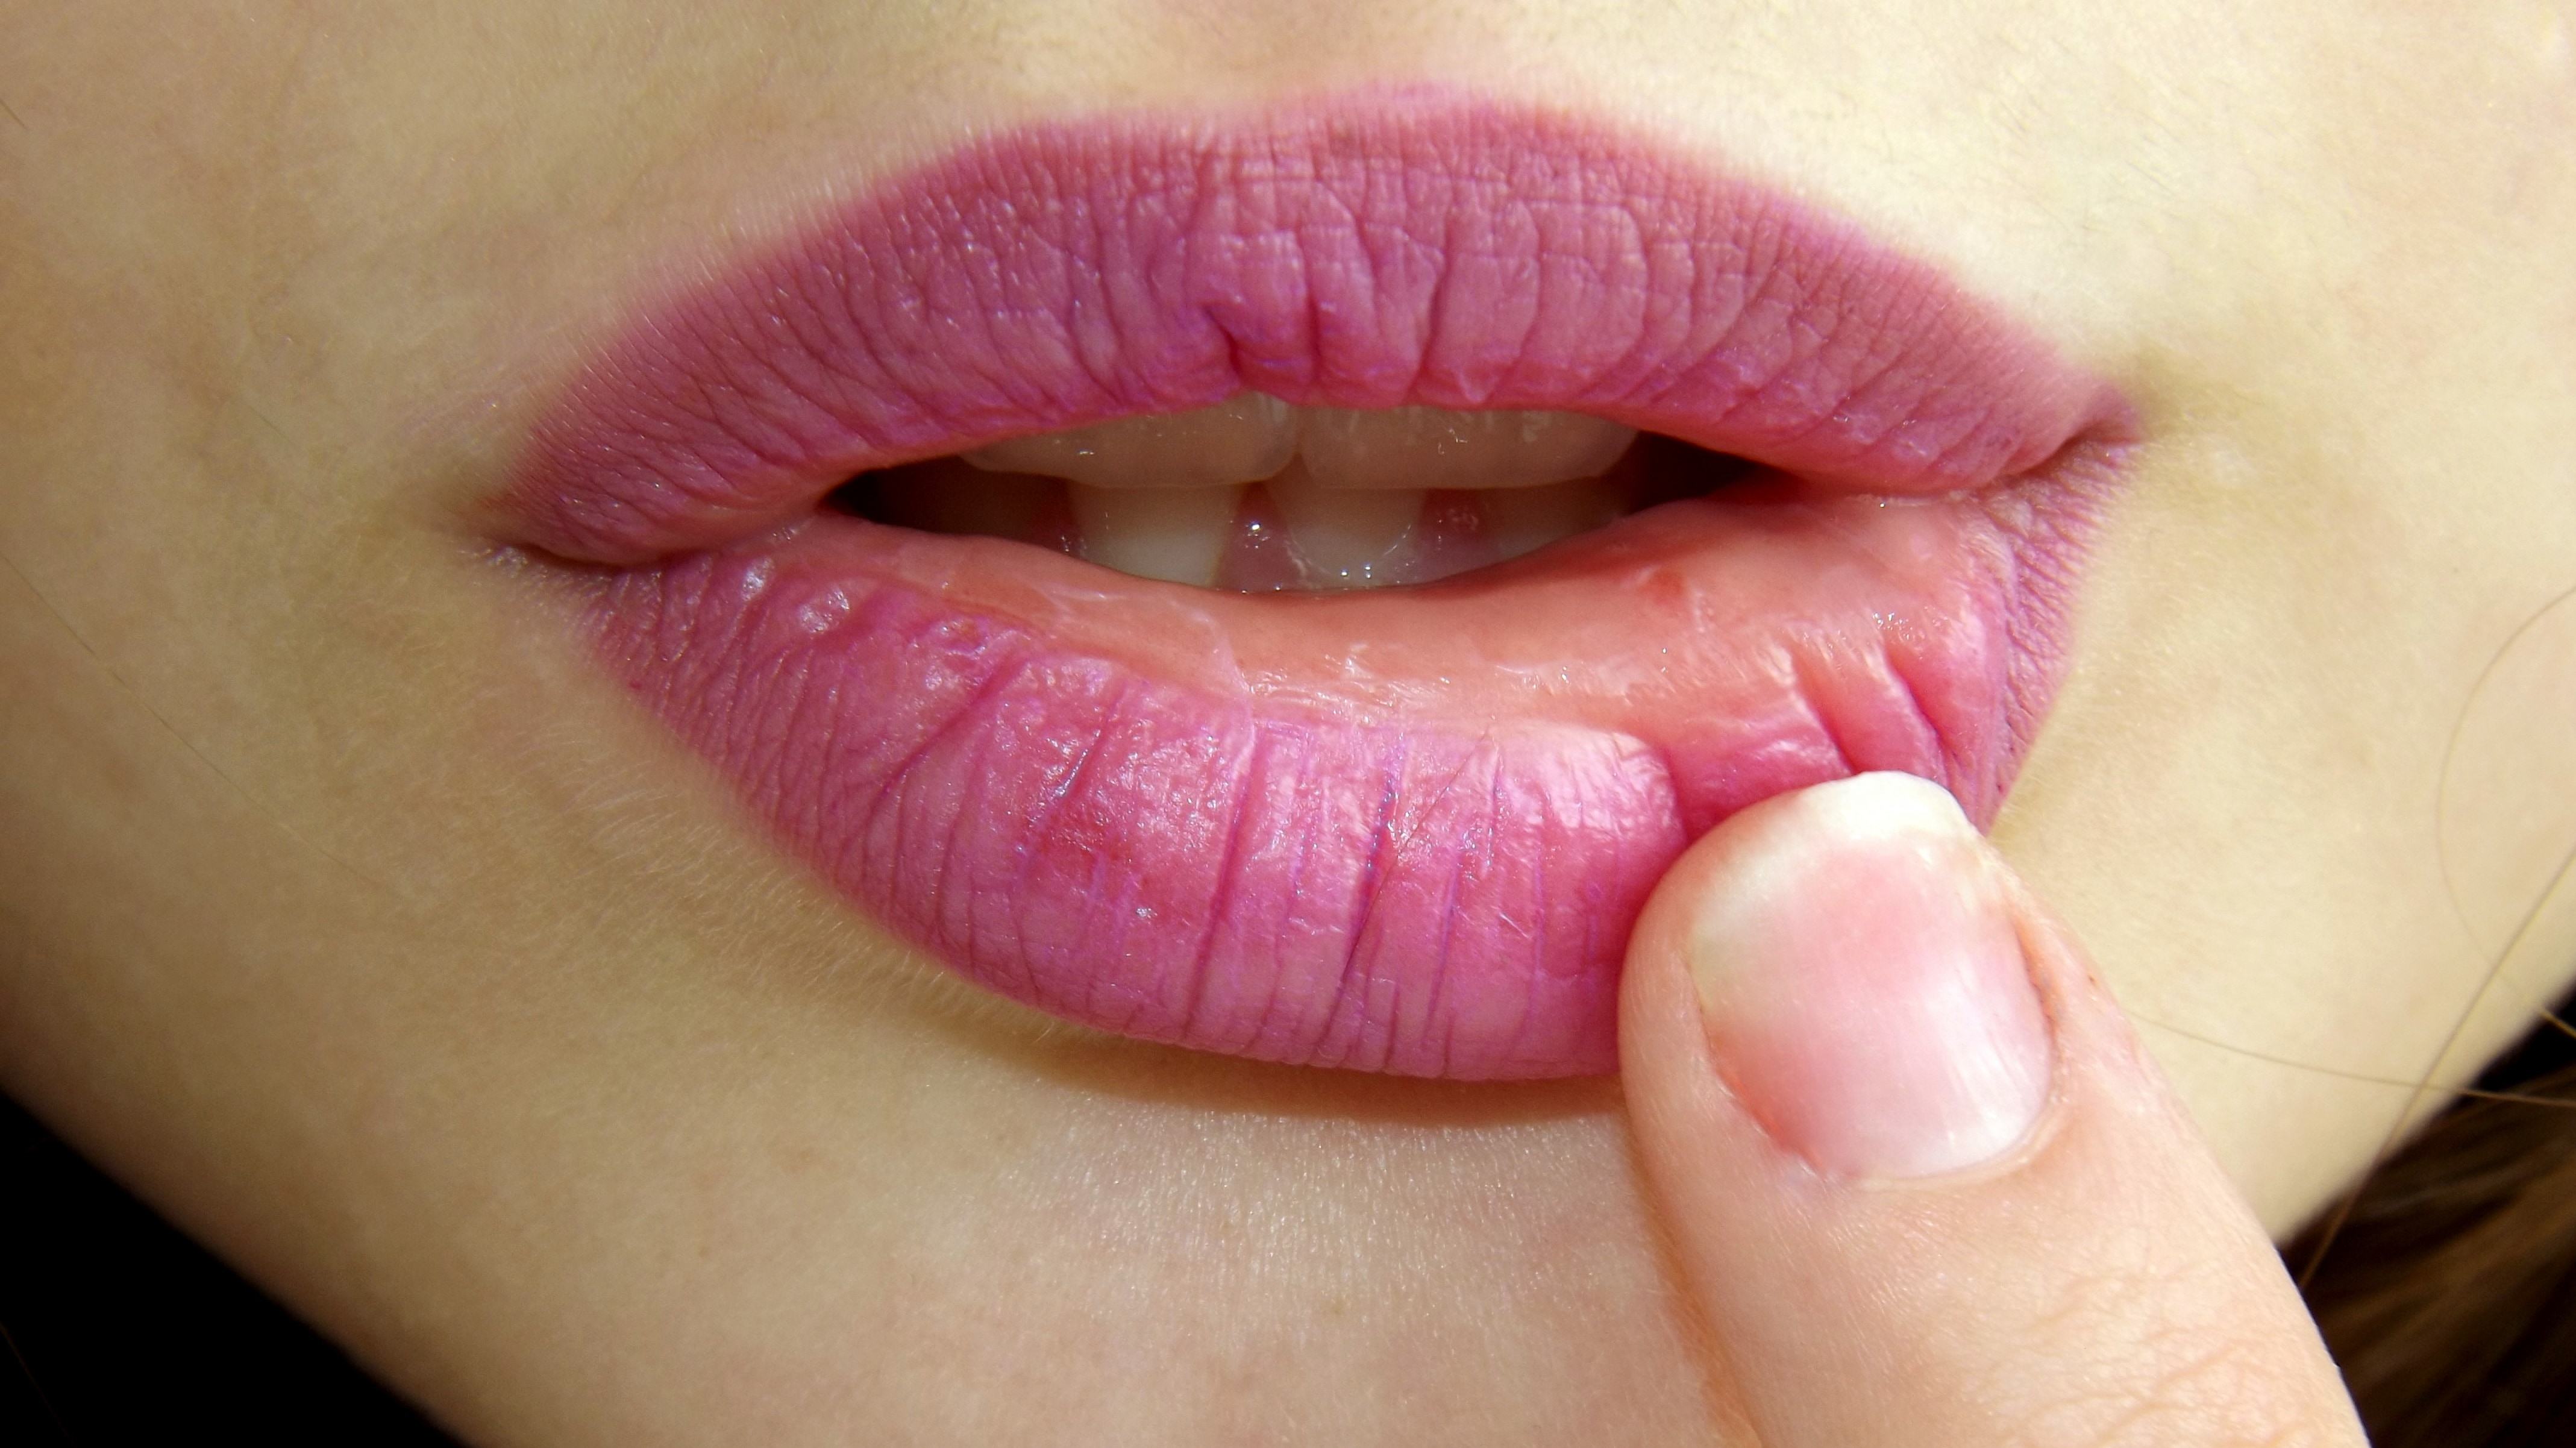 women's lips